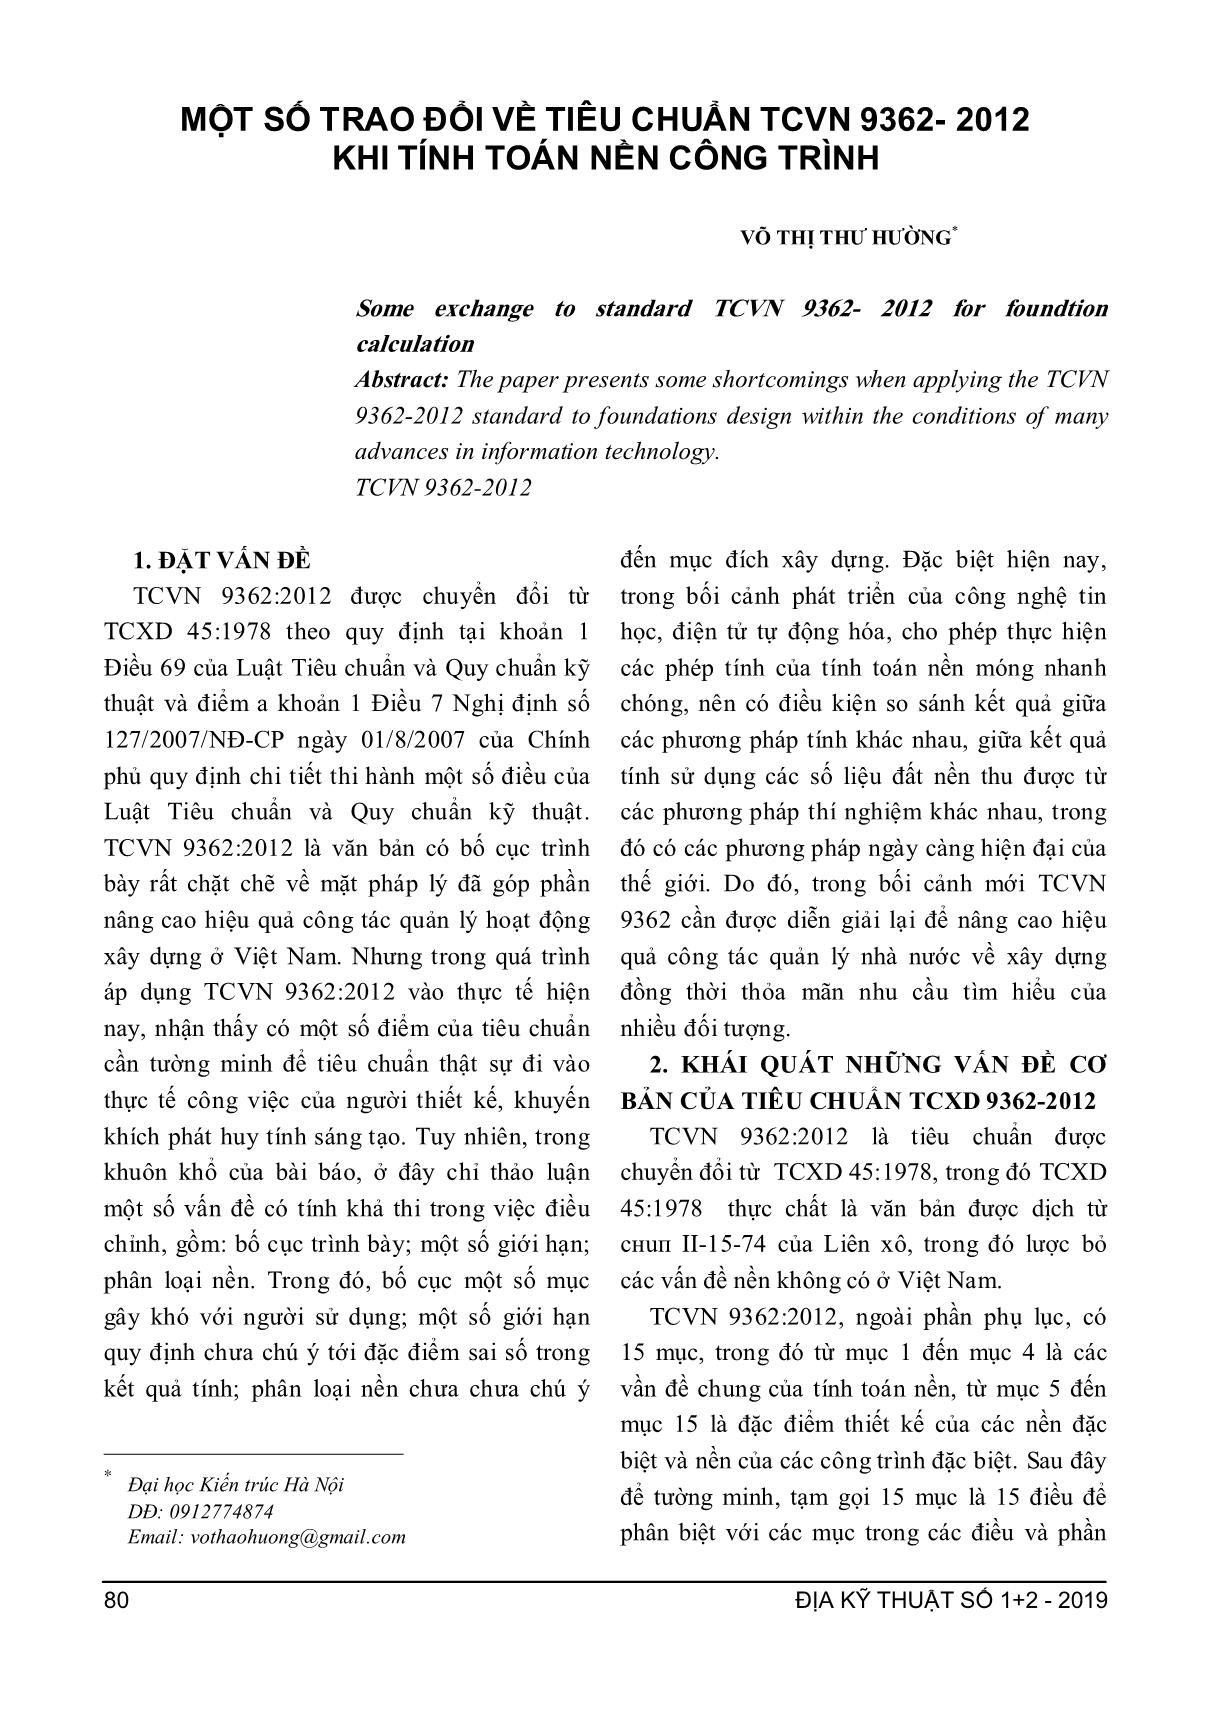 Một số trao đổi về tiêu chuẩn TCVN 9362- 2012 khi tính toán nền công trình trang 1